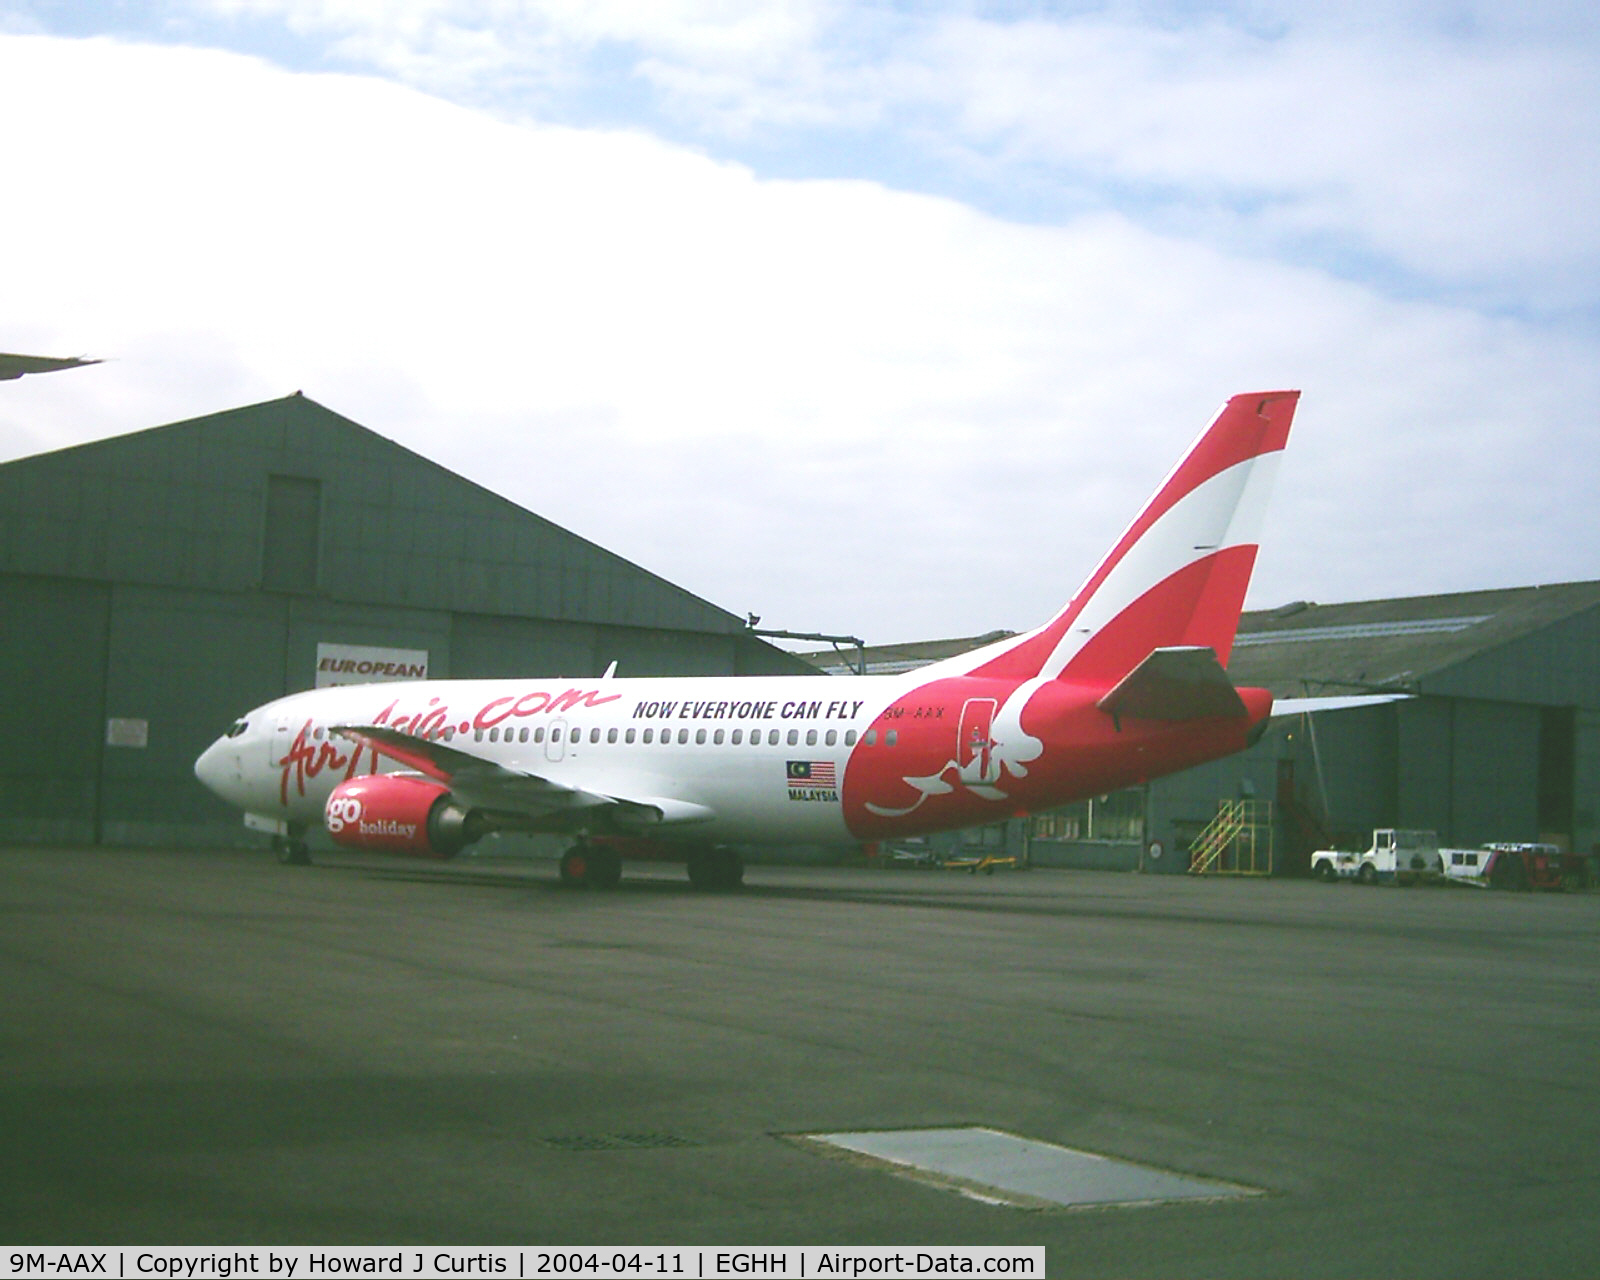 9M-AAX, 1990 Boeing 737-3Y0 C/N 24547, Air Asia, ex G-IGOE.